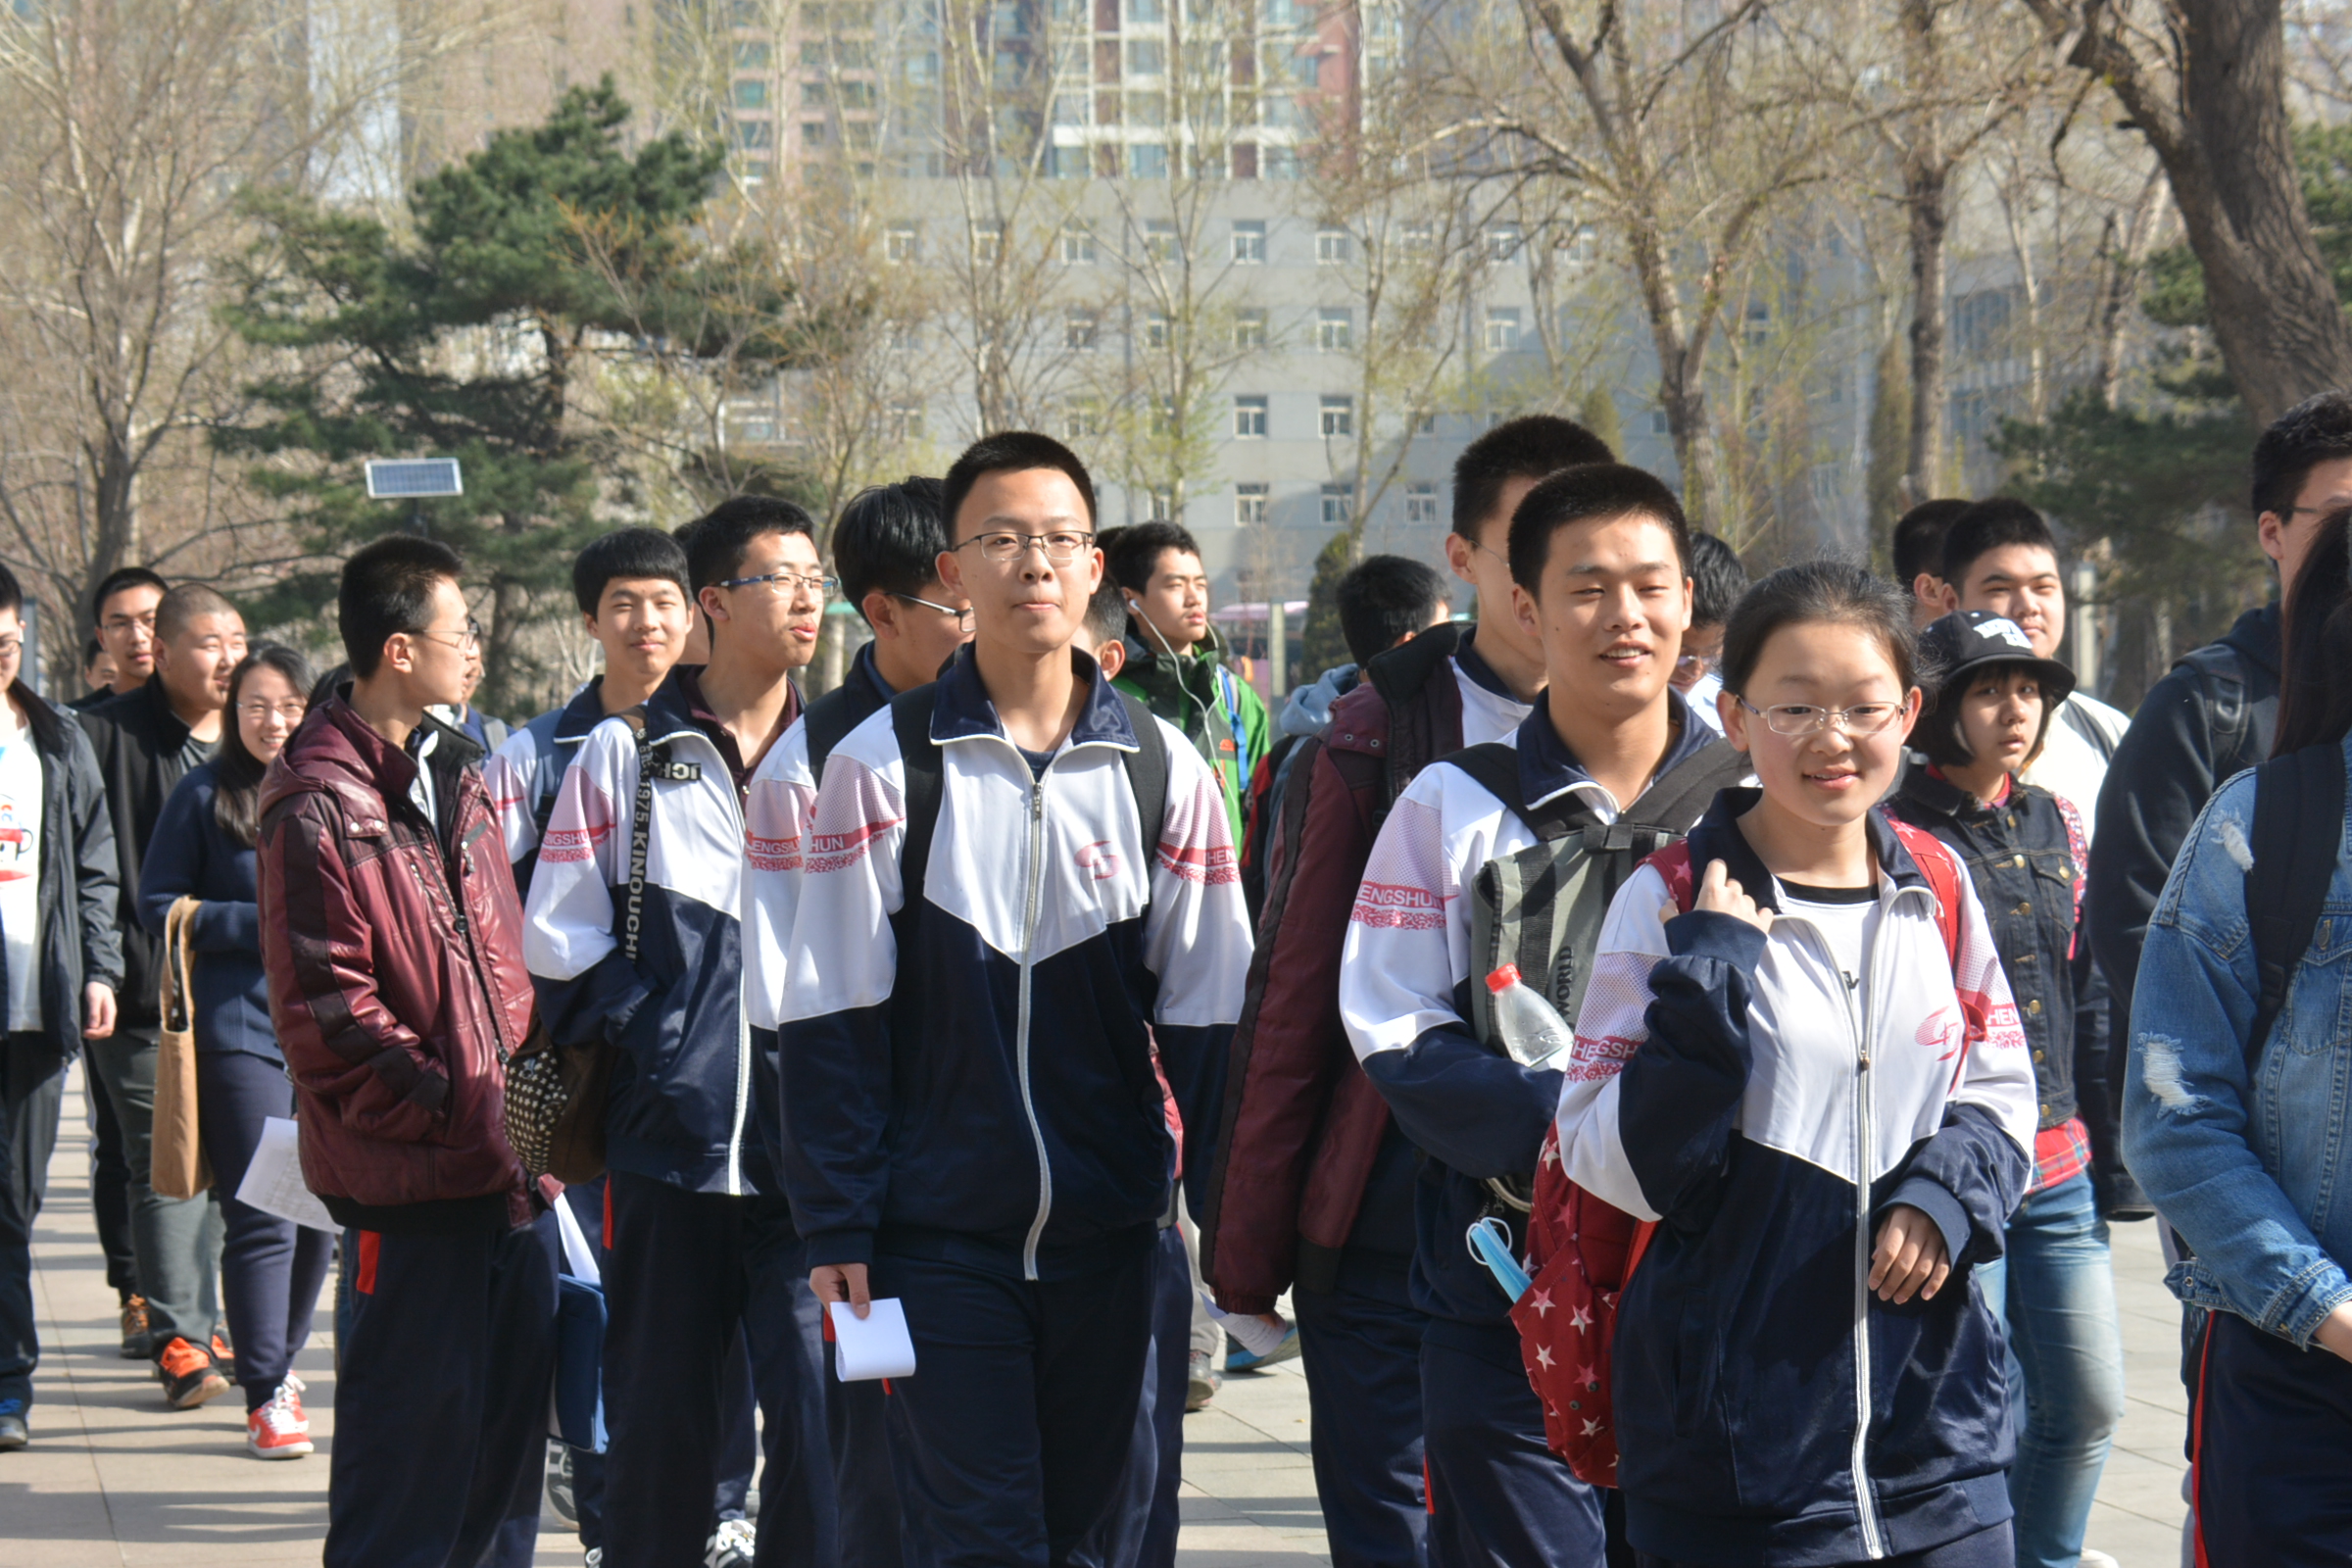 第四届辽宁省数学创新应用大赛复赛在沈顺利举行